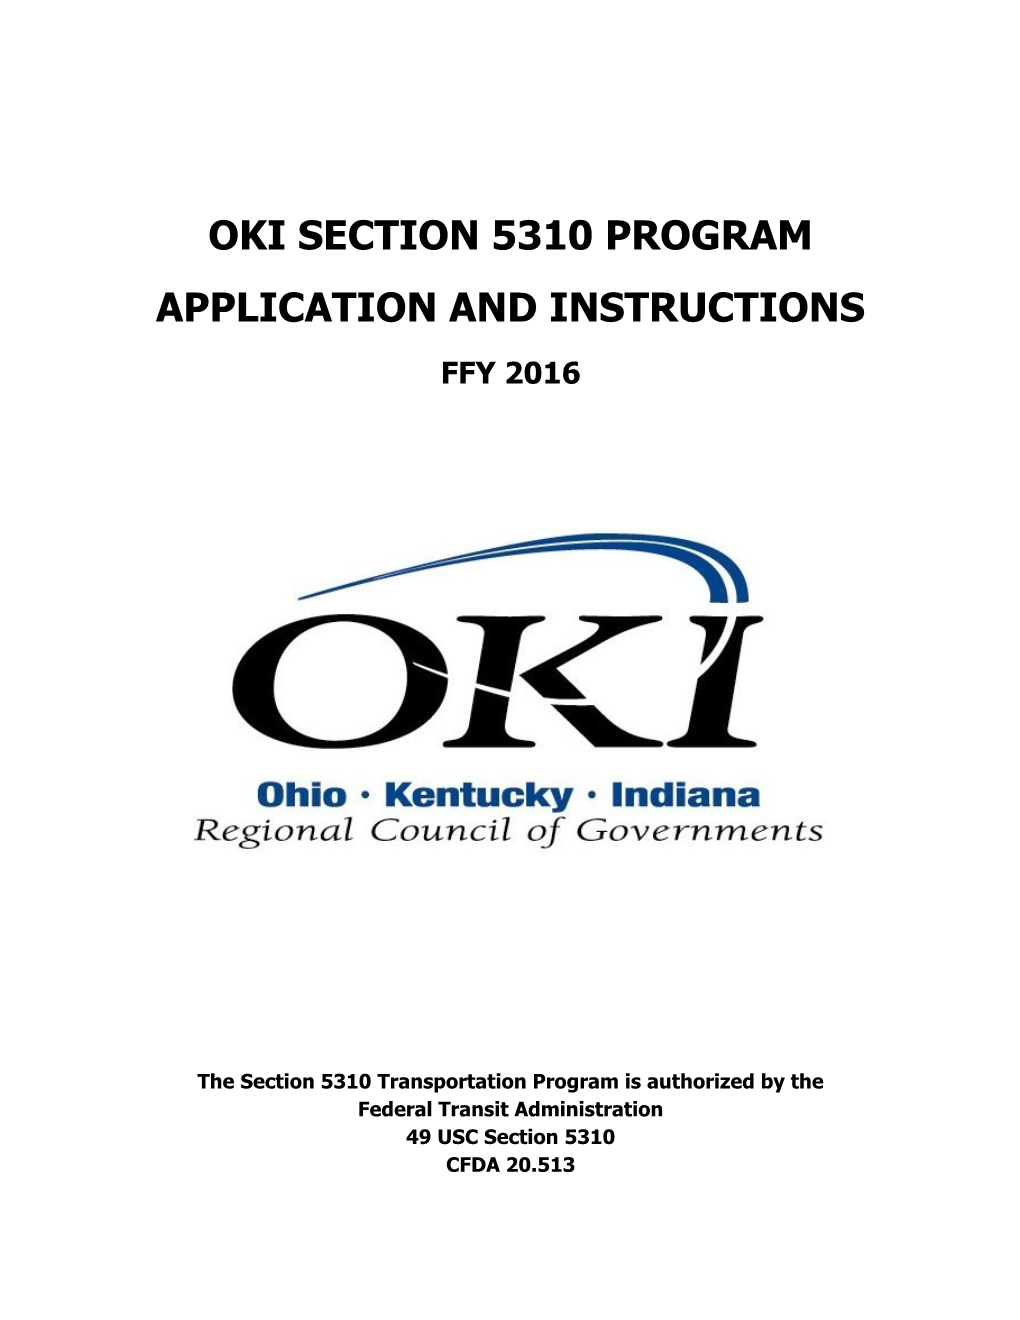 Oki Section 5310 Program